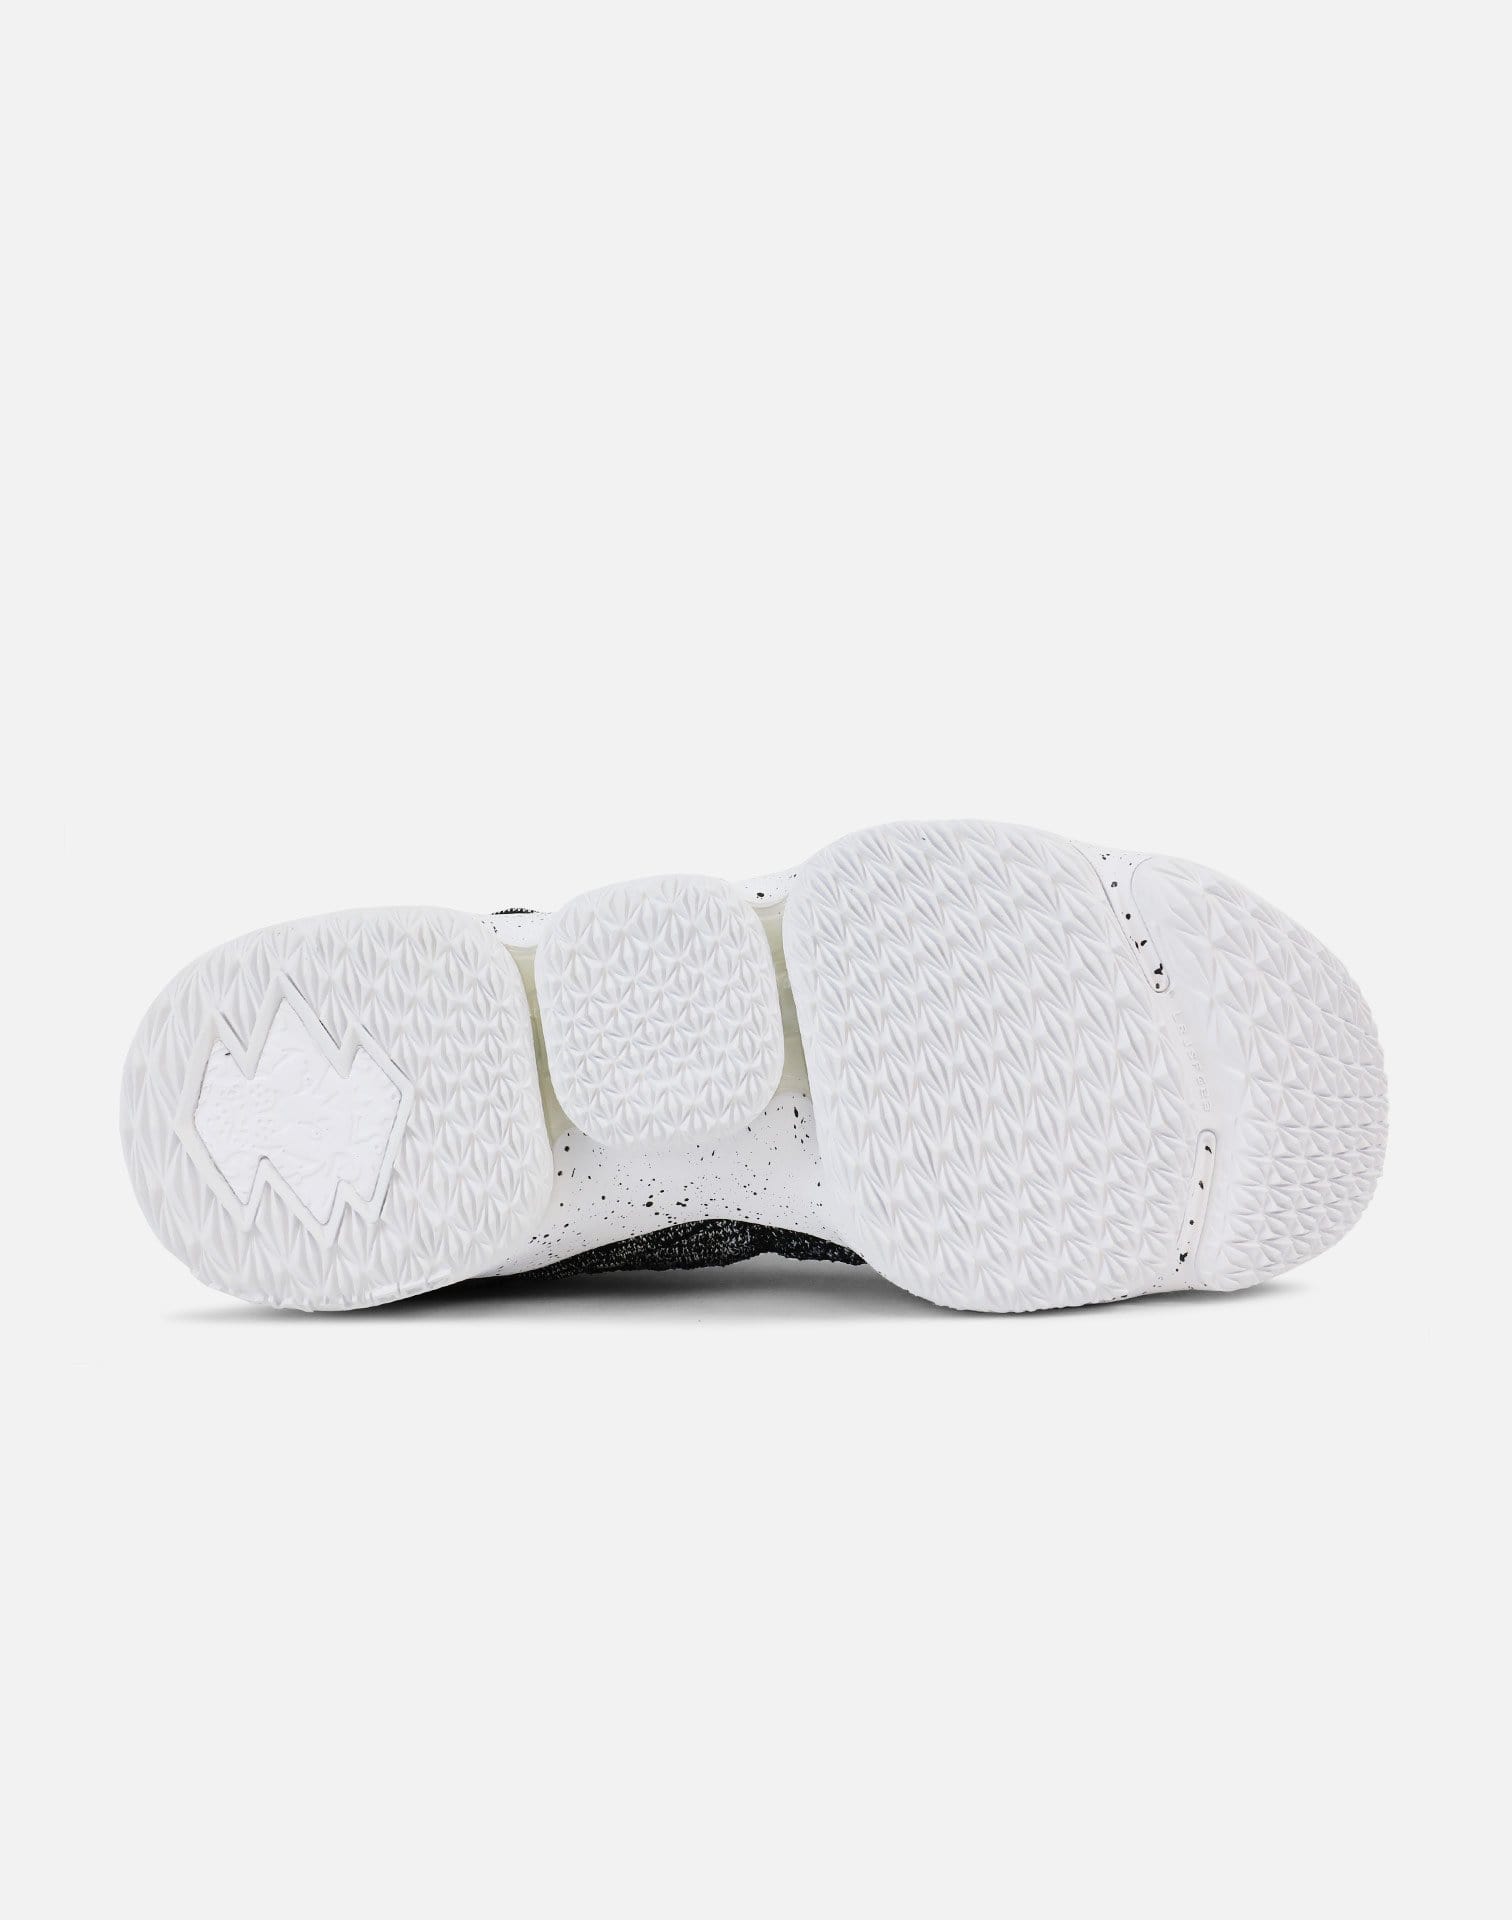 Nike Lebron 15 (Black/White-White)